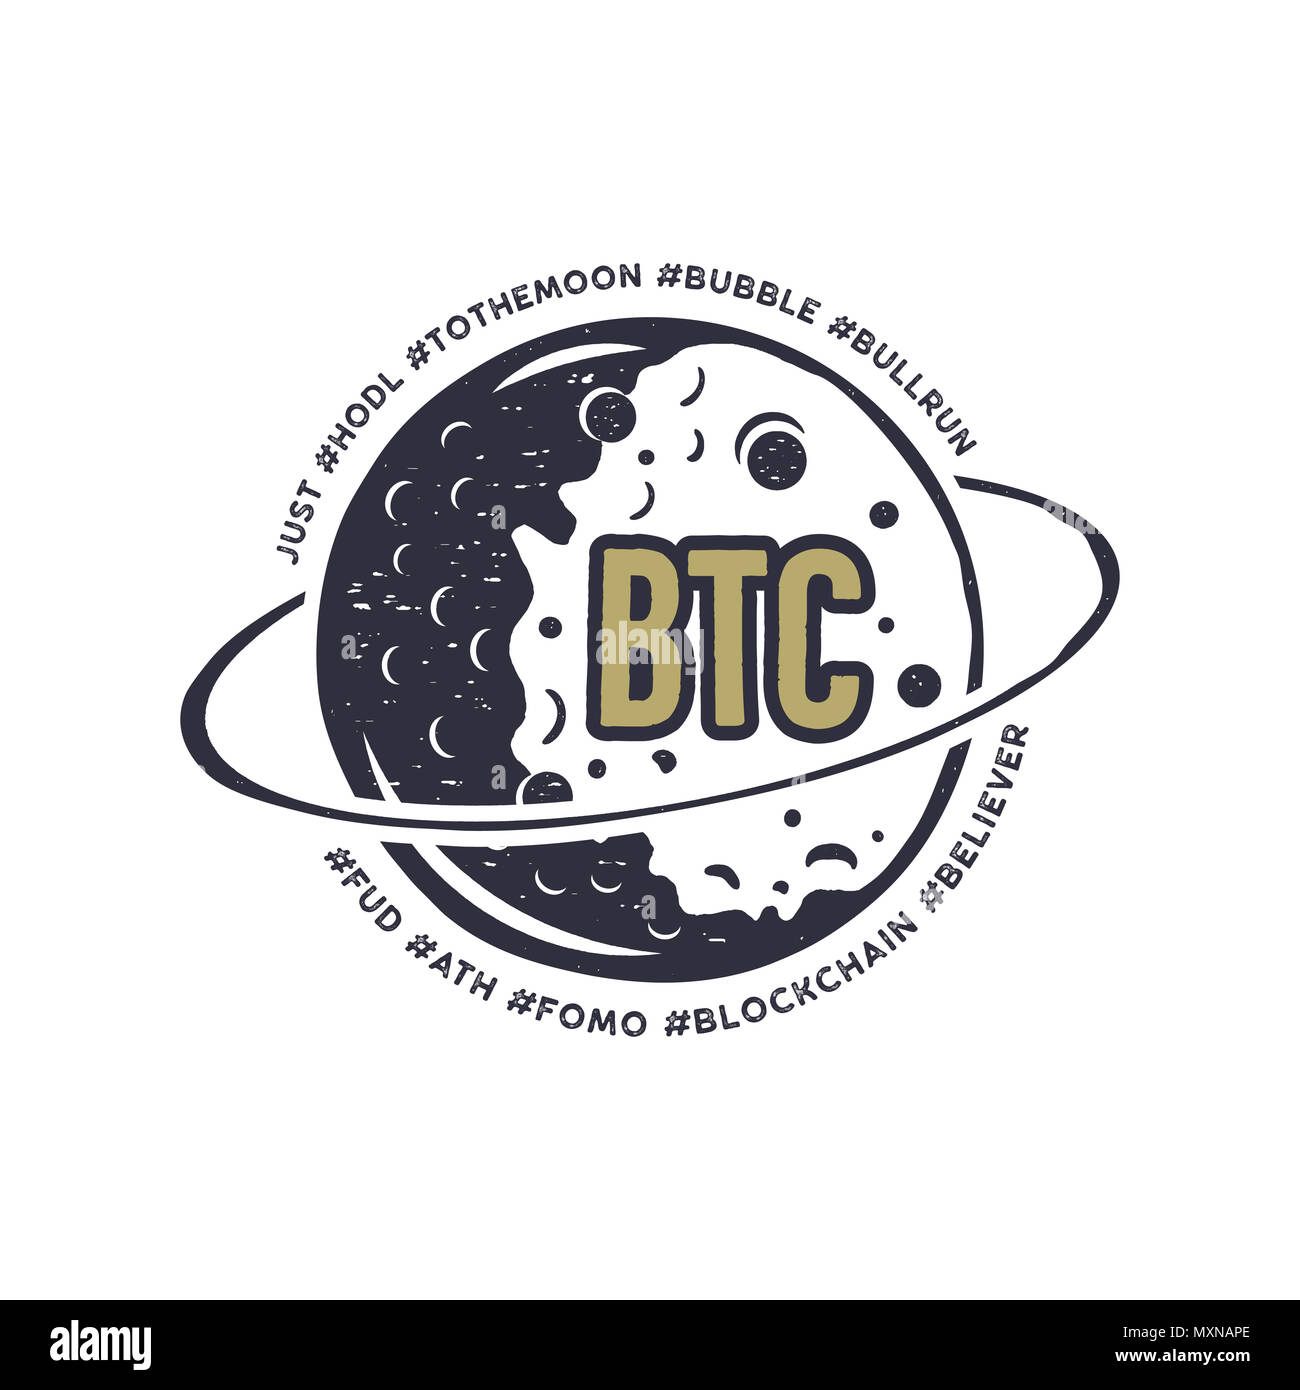 Lune emblème Bitcoin avec drôle hashtags en orbite - bulle, blockchain hodl, et d'autres. Crypto-Cadeaux T-shirt pour les geeks. Raccord en T de la technologie du design. En stock illustration Banque D'Images